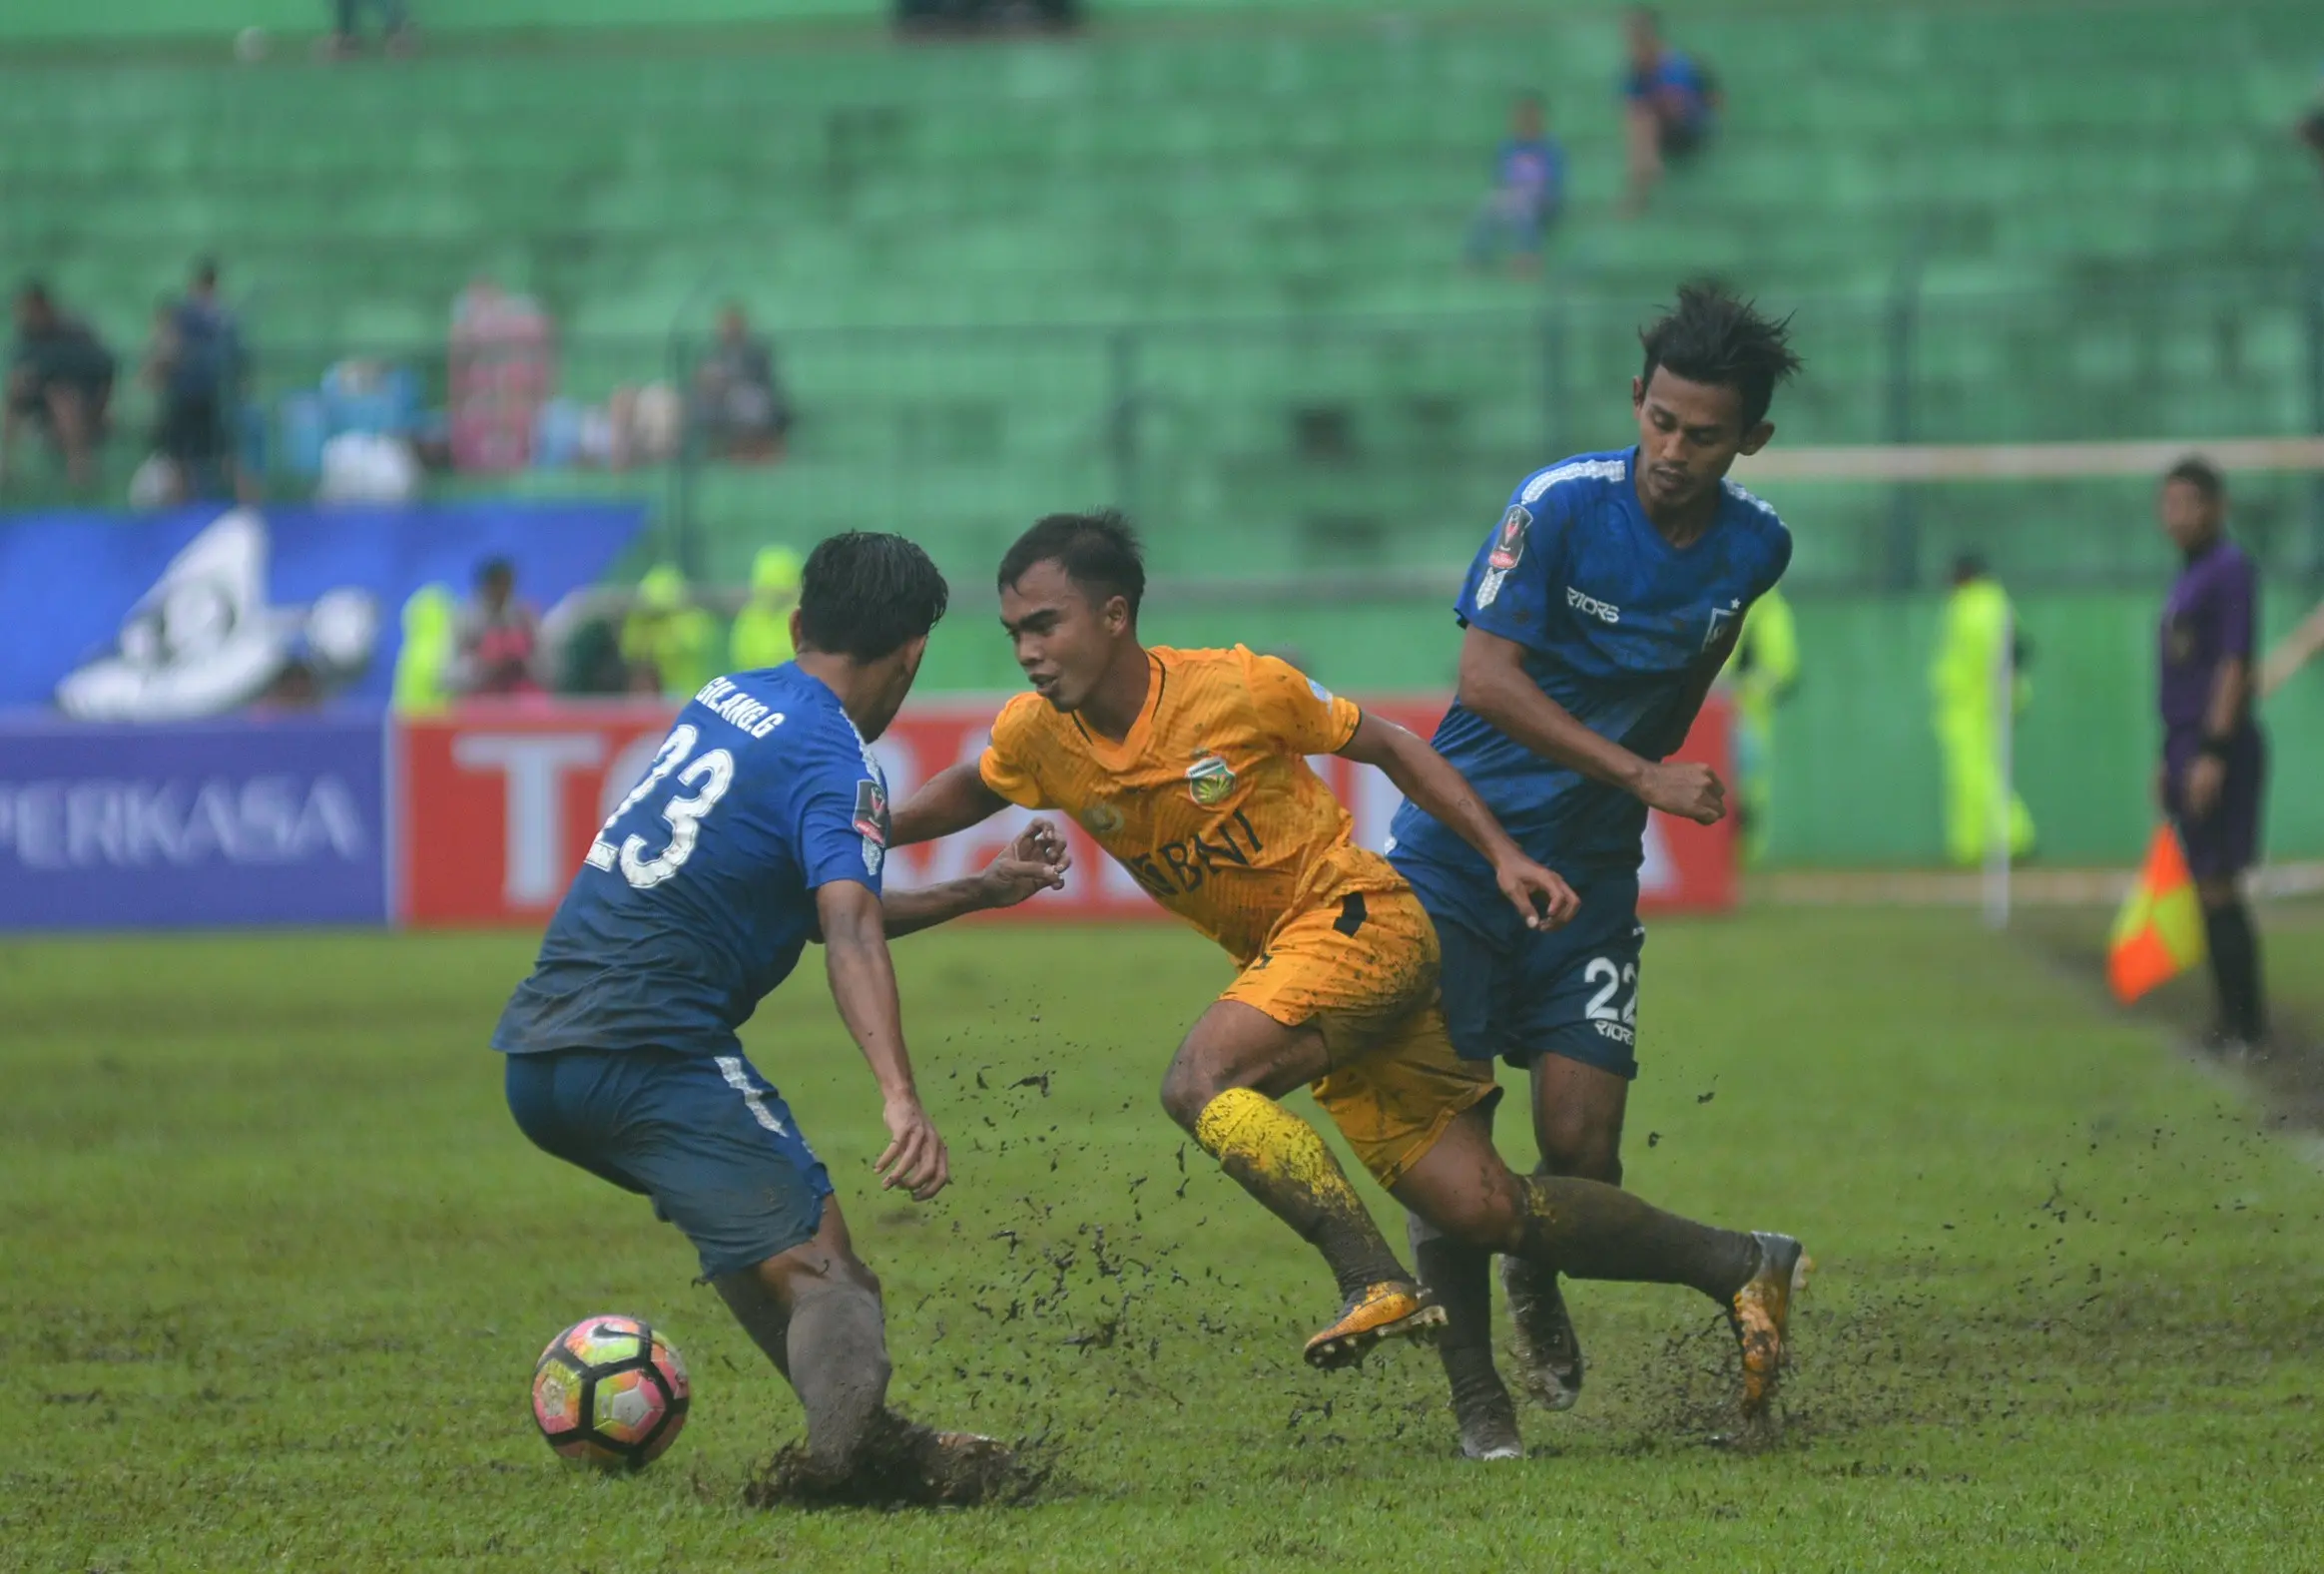 Laga Bhayangkara FC vs PSIS Semarang di Stadion Gajayana, Malang, Sabtu (20/1/2018). Laga berakhir 1-0 untuk Bhayangkara FC. (/Rana Adwa)